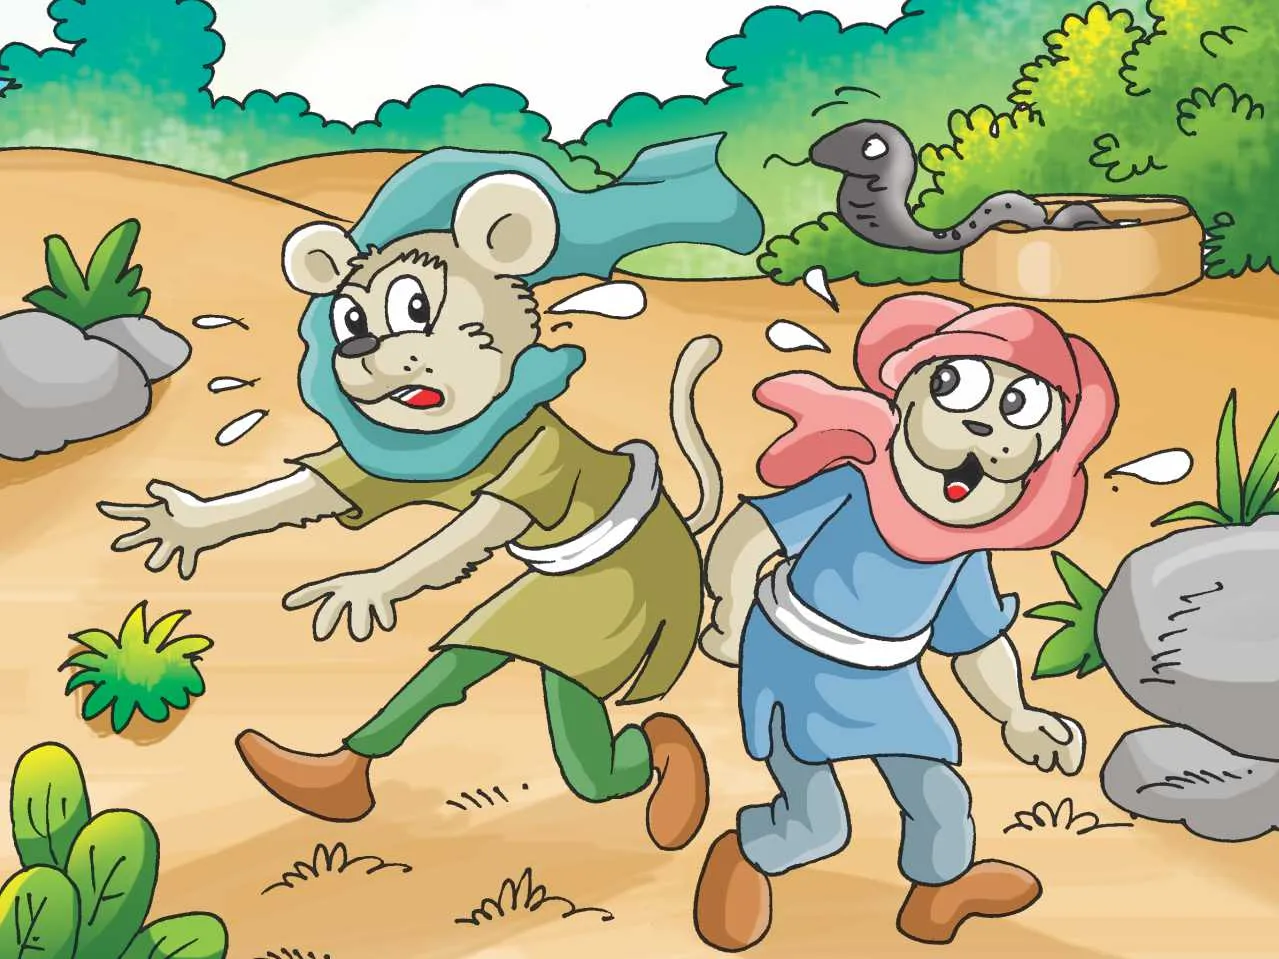 Monkey and snake cartoon image